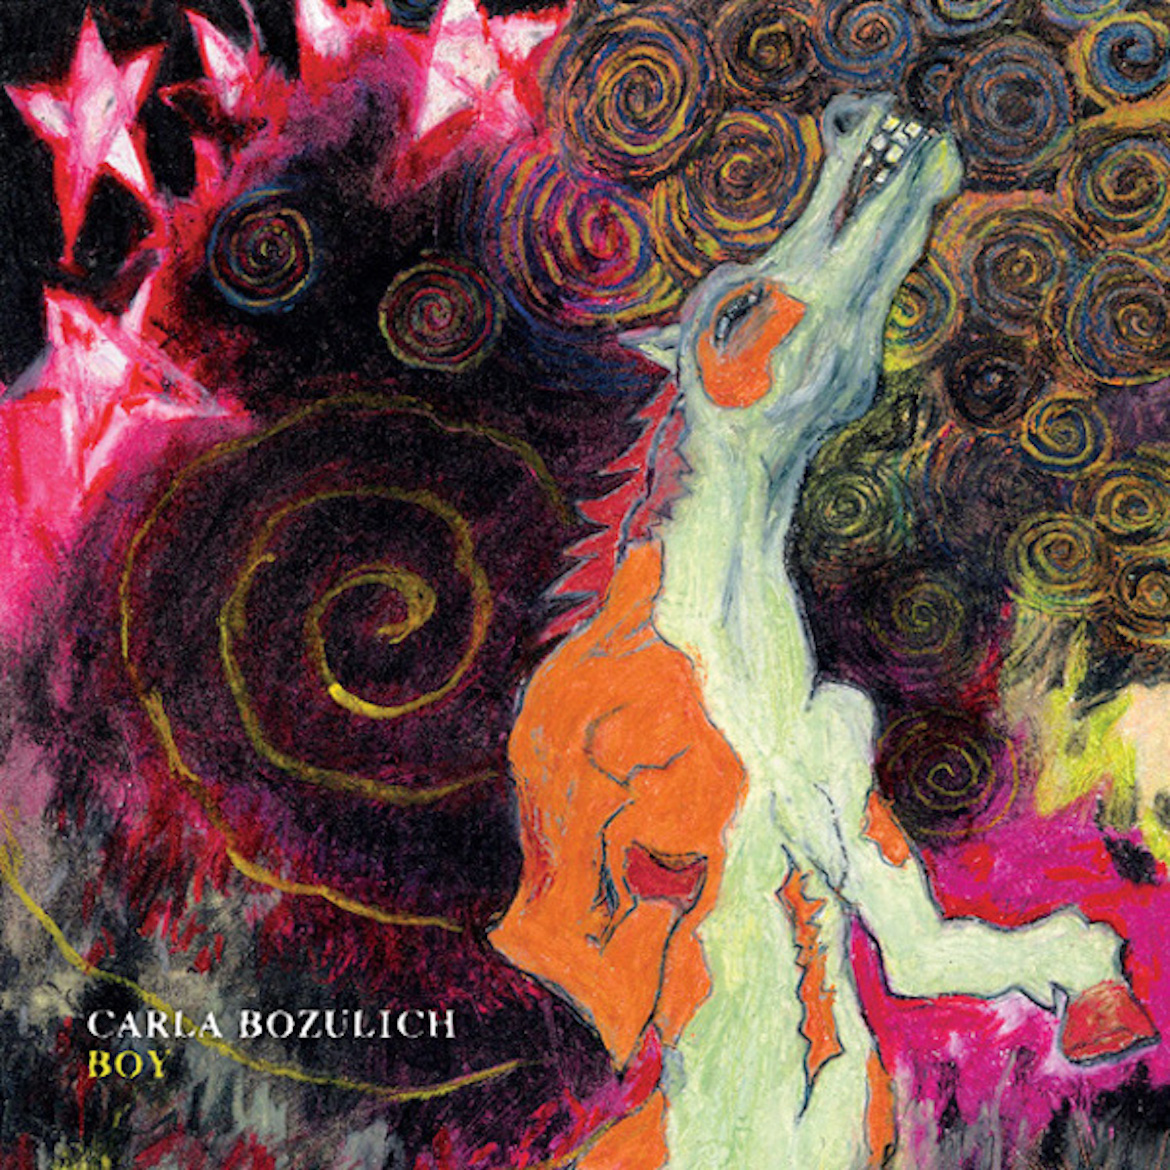 Boy album cover by Carla Bozulich